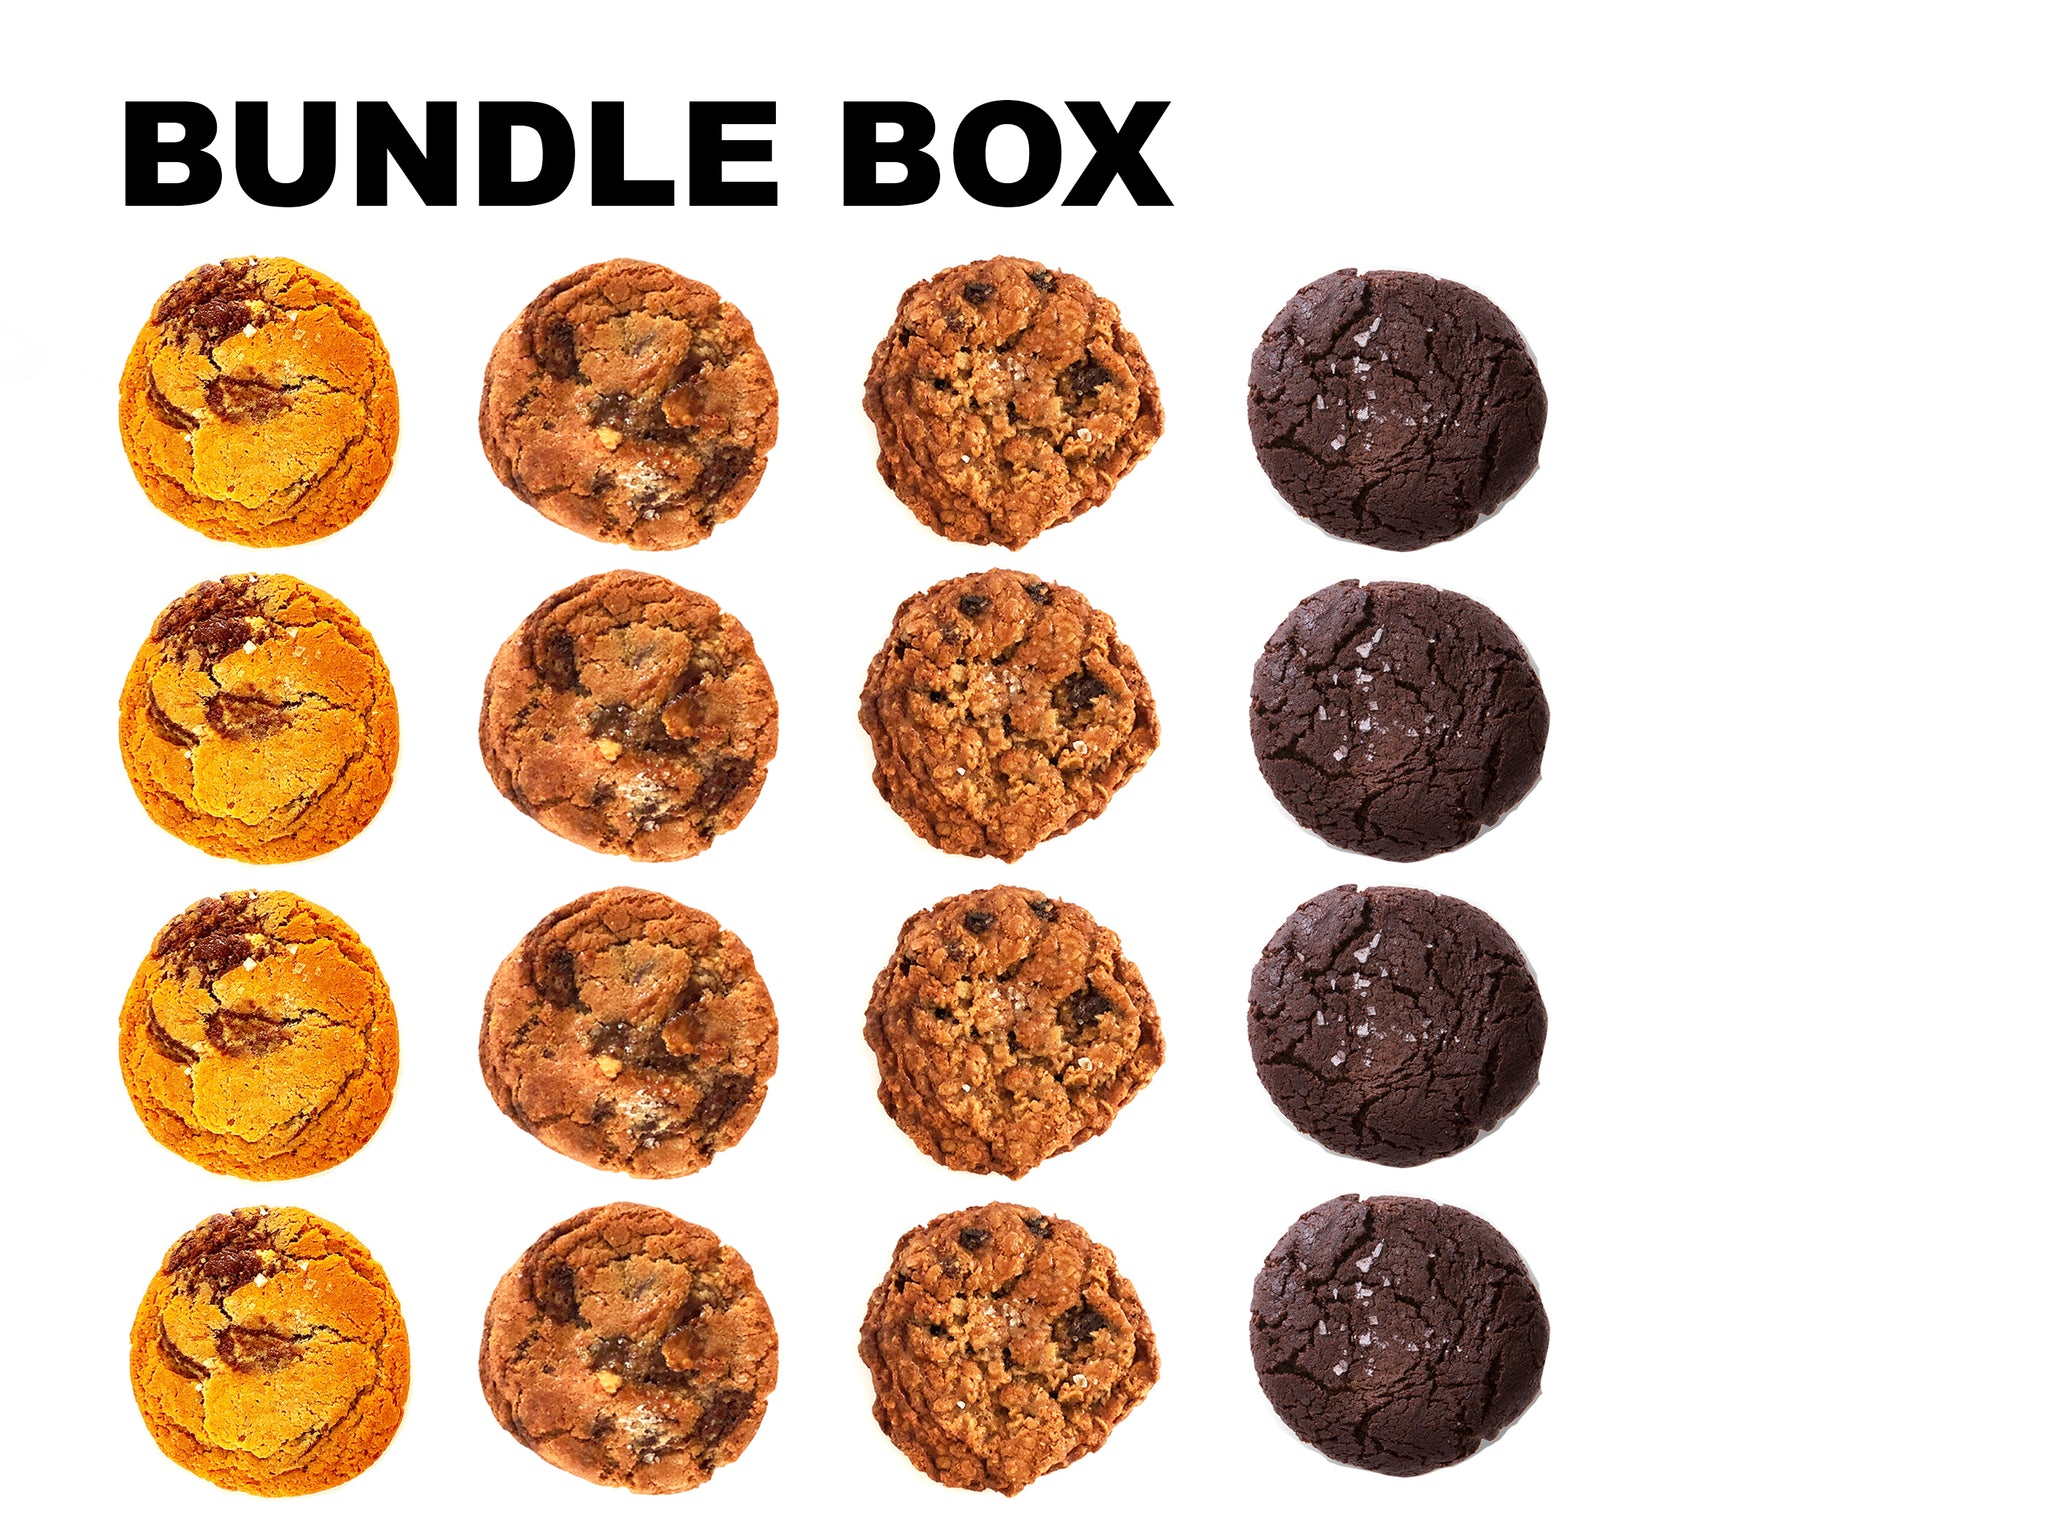 Chocolate Orange Cookies - The Monday Box